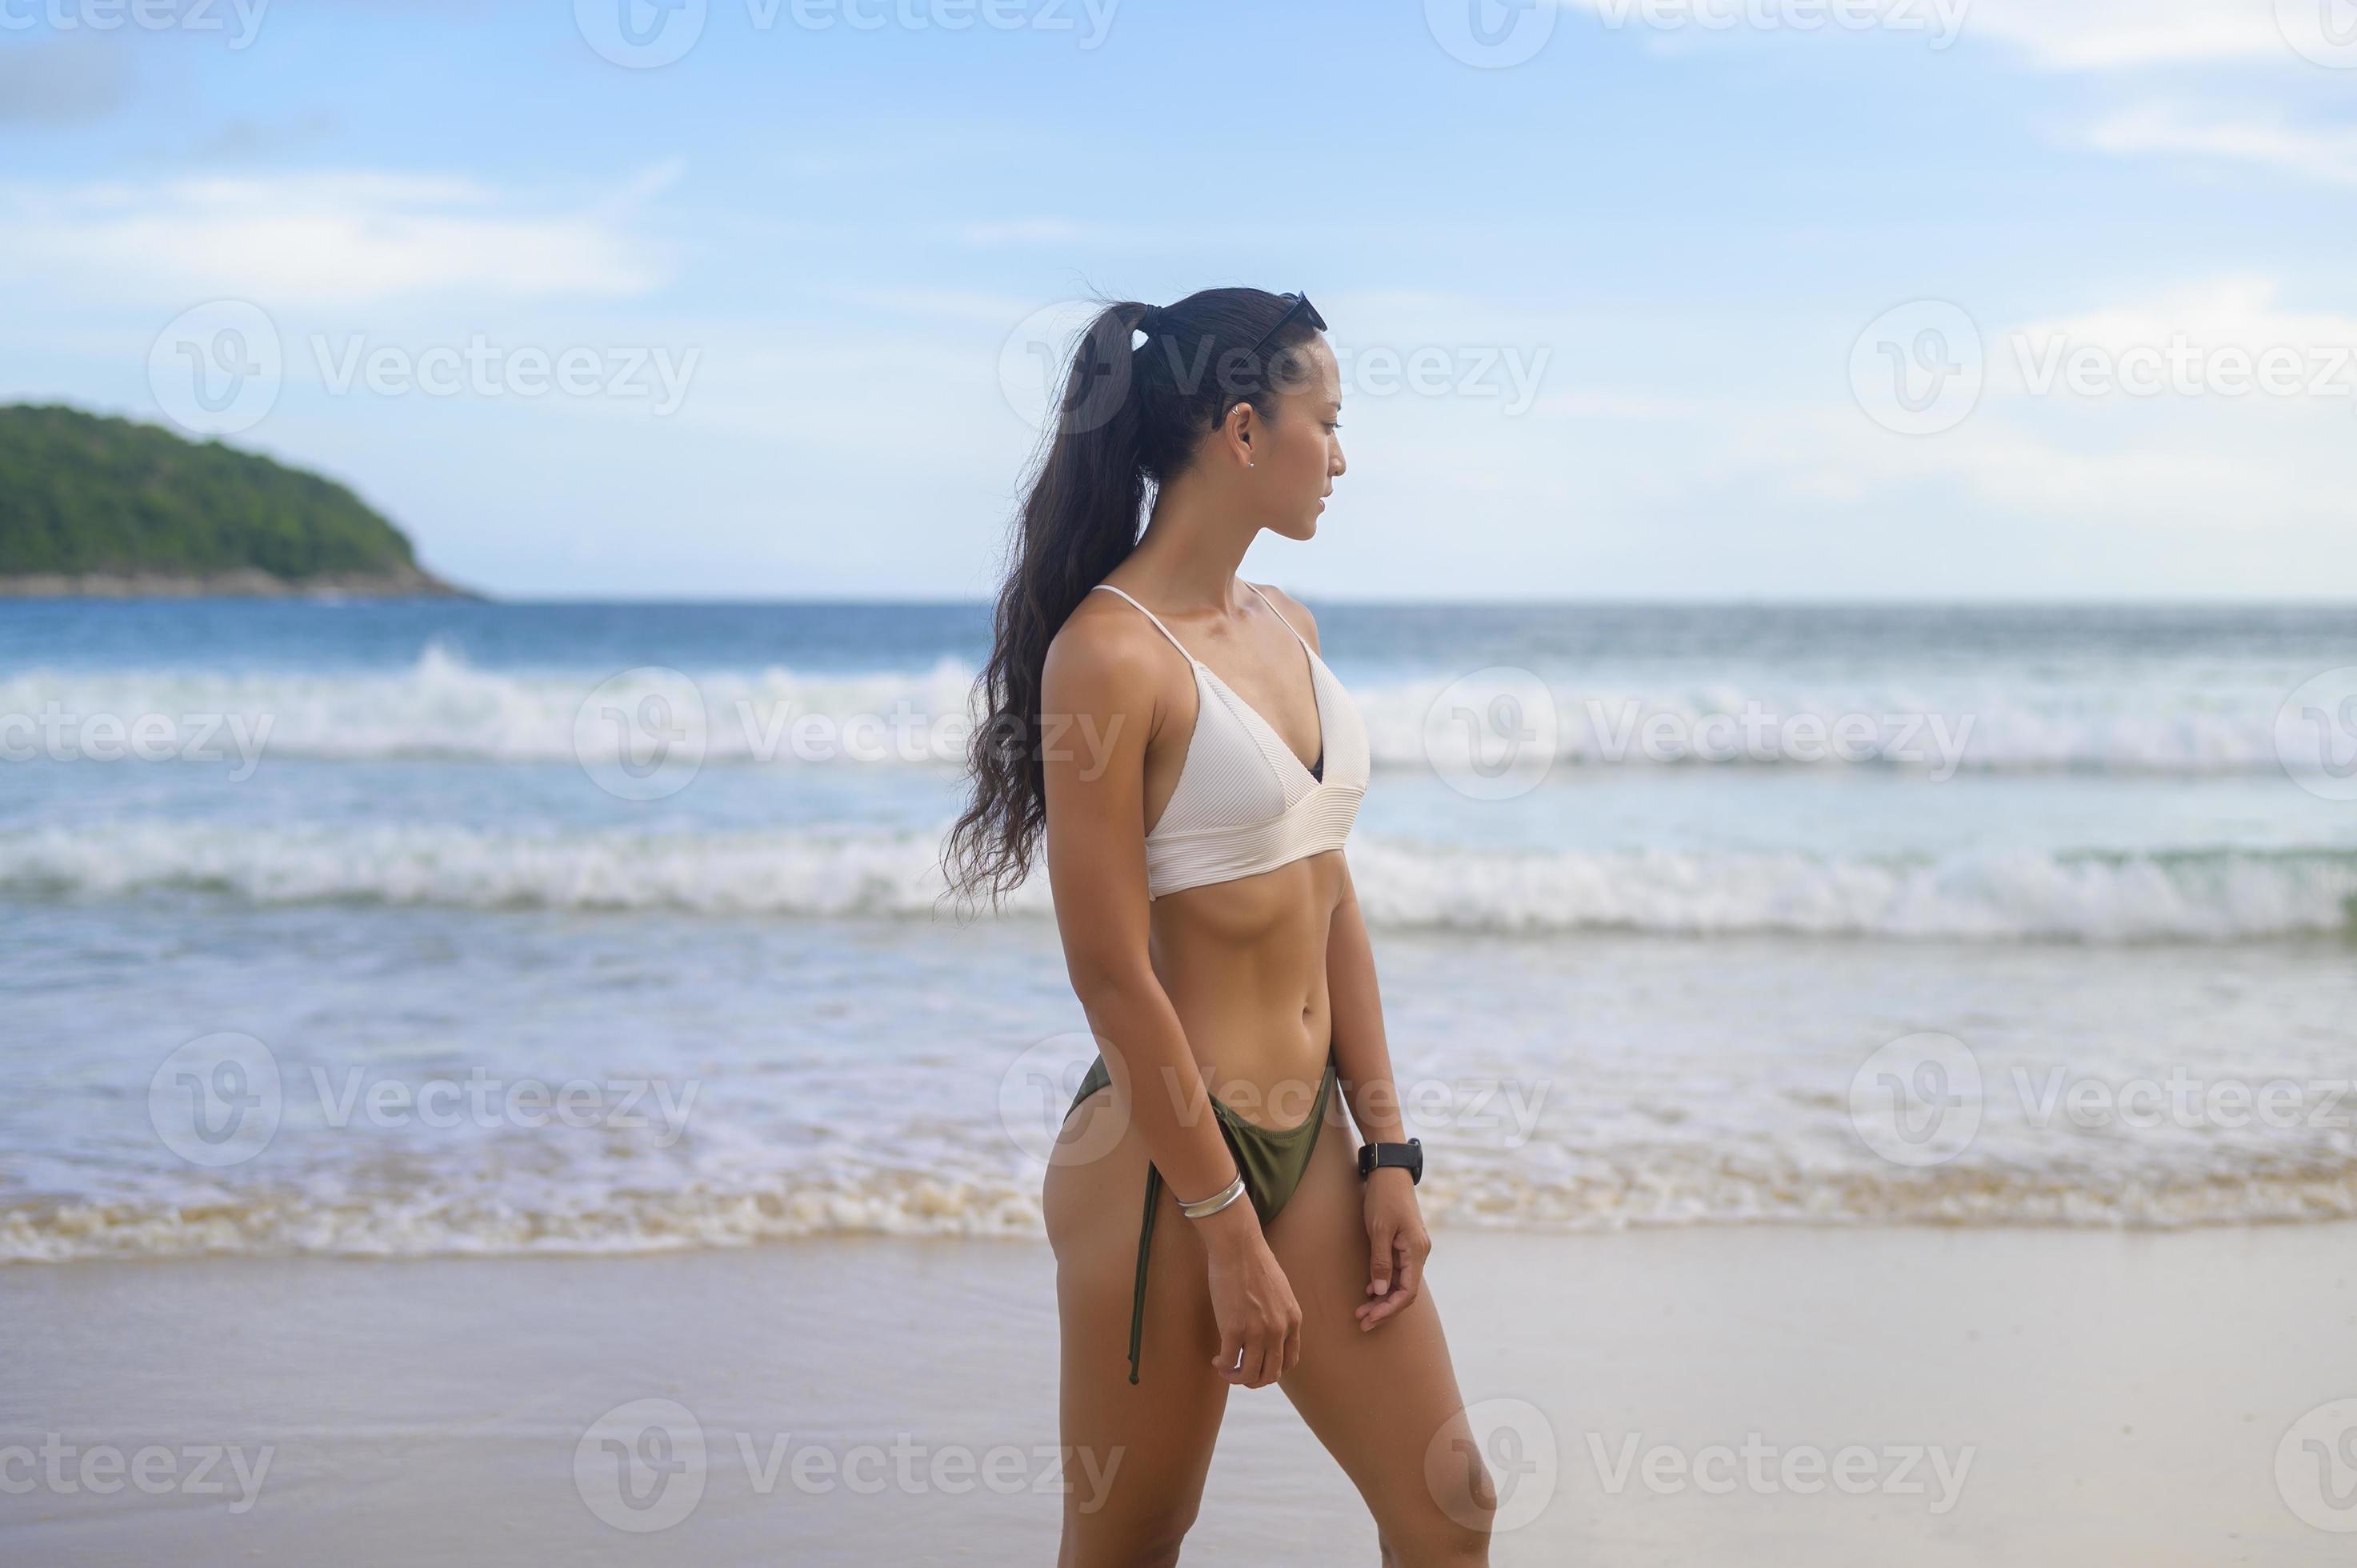 Voorstad Emotie twintig jonge mooie vrouw in bikini genieten en ontspannen op het strand, zomer,  vakantie, vakantie, levensstijl concept. 9284678 stockfoto bij Vecteezy